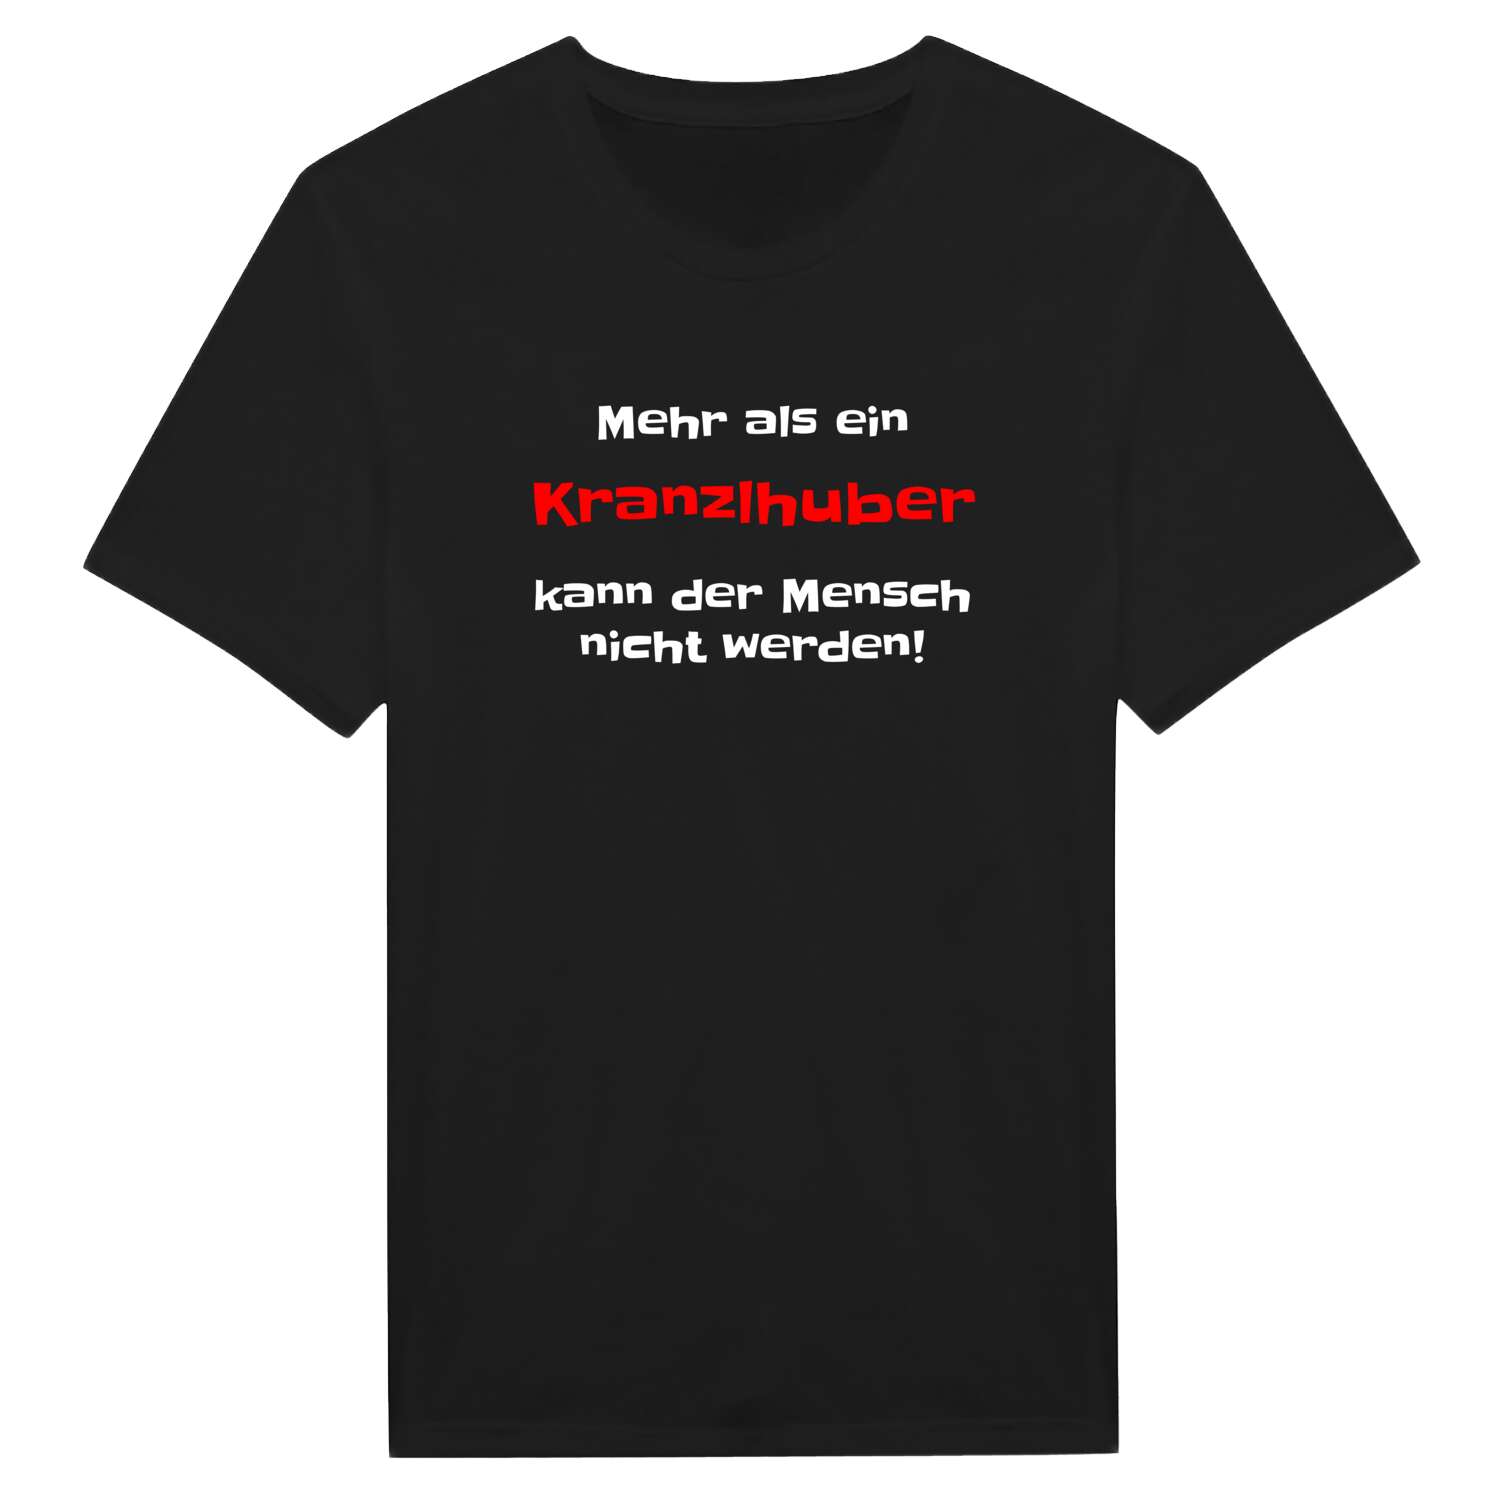 Kranzlhub T-Shirt »Mehr als ein«